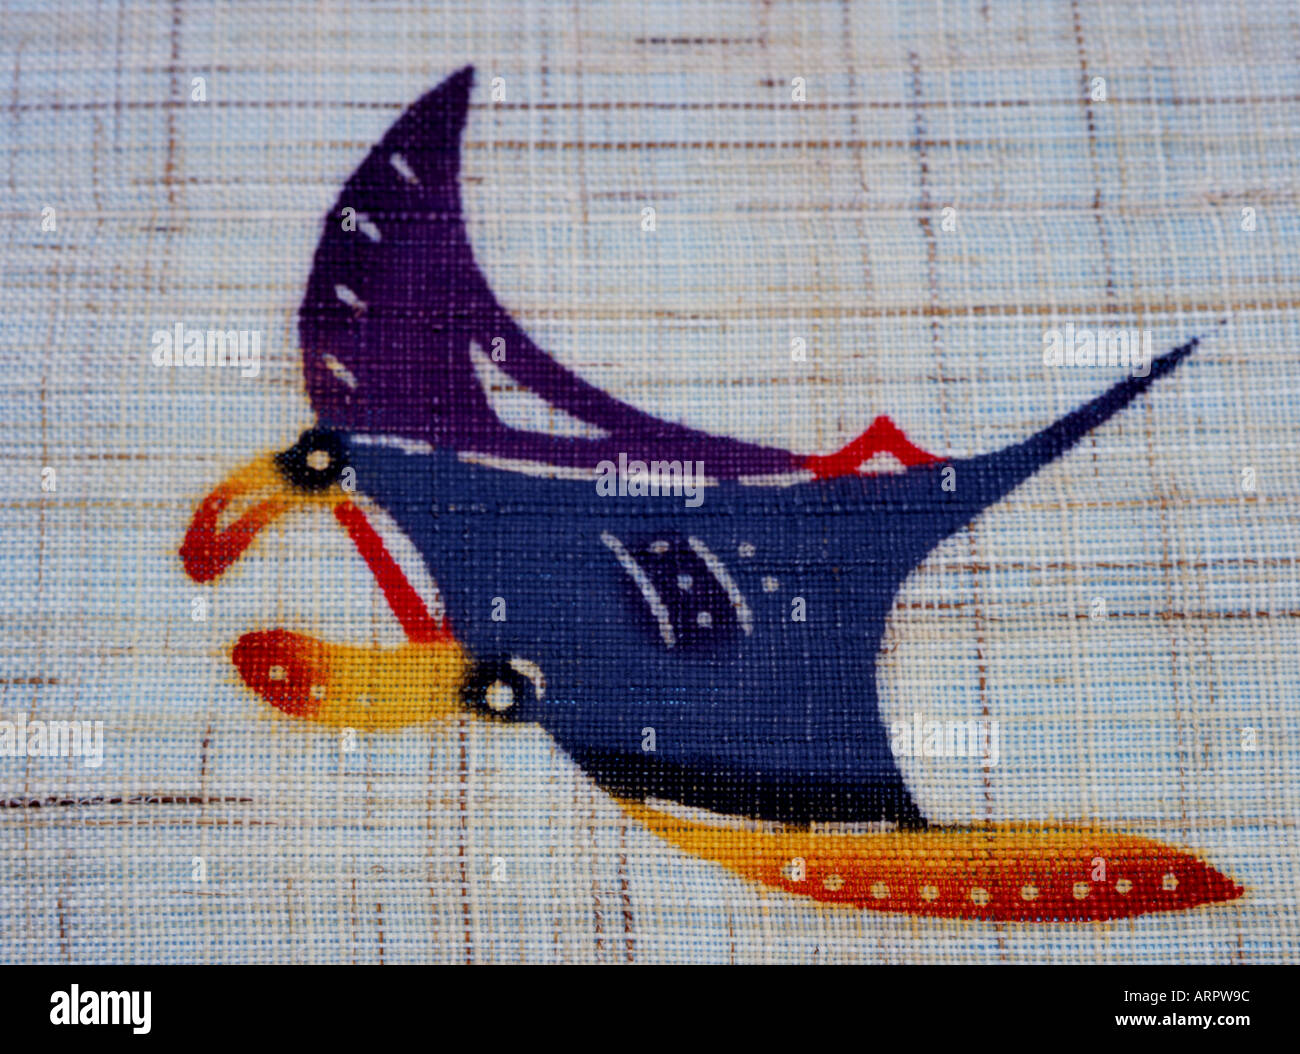 Mantarochen auf Stoff gedruckt. Ein klassisches Okinawa Bingata design  Stockfotografie - Alamy